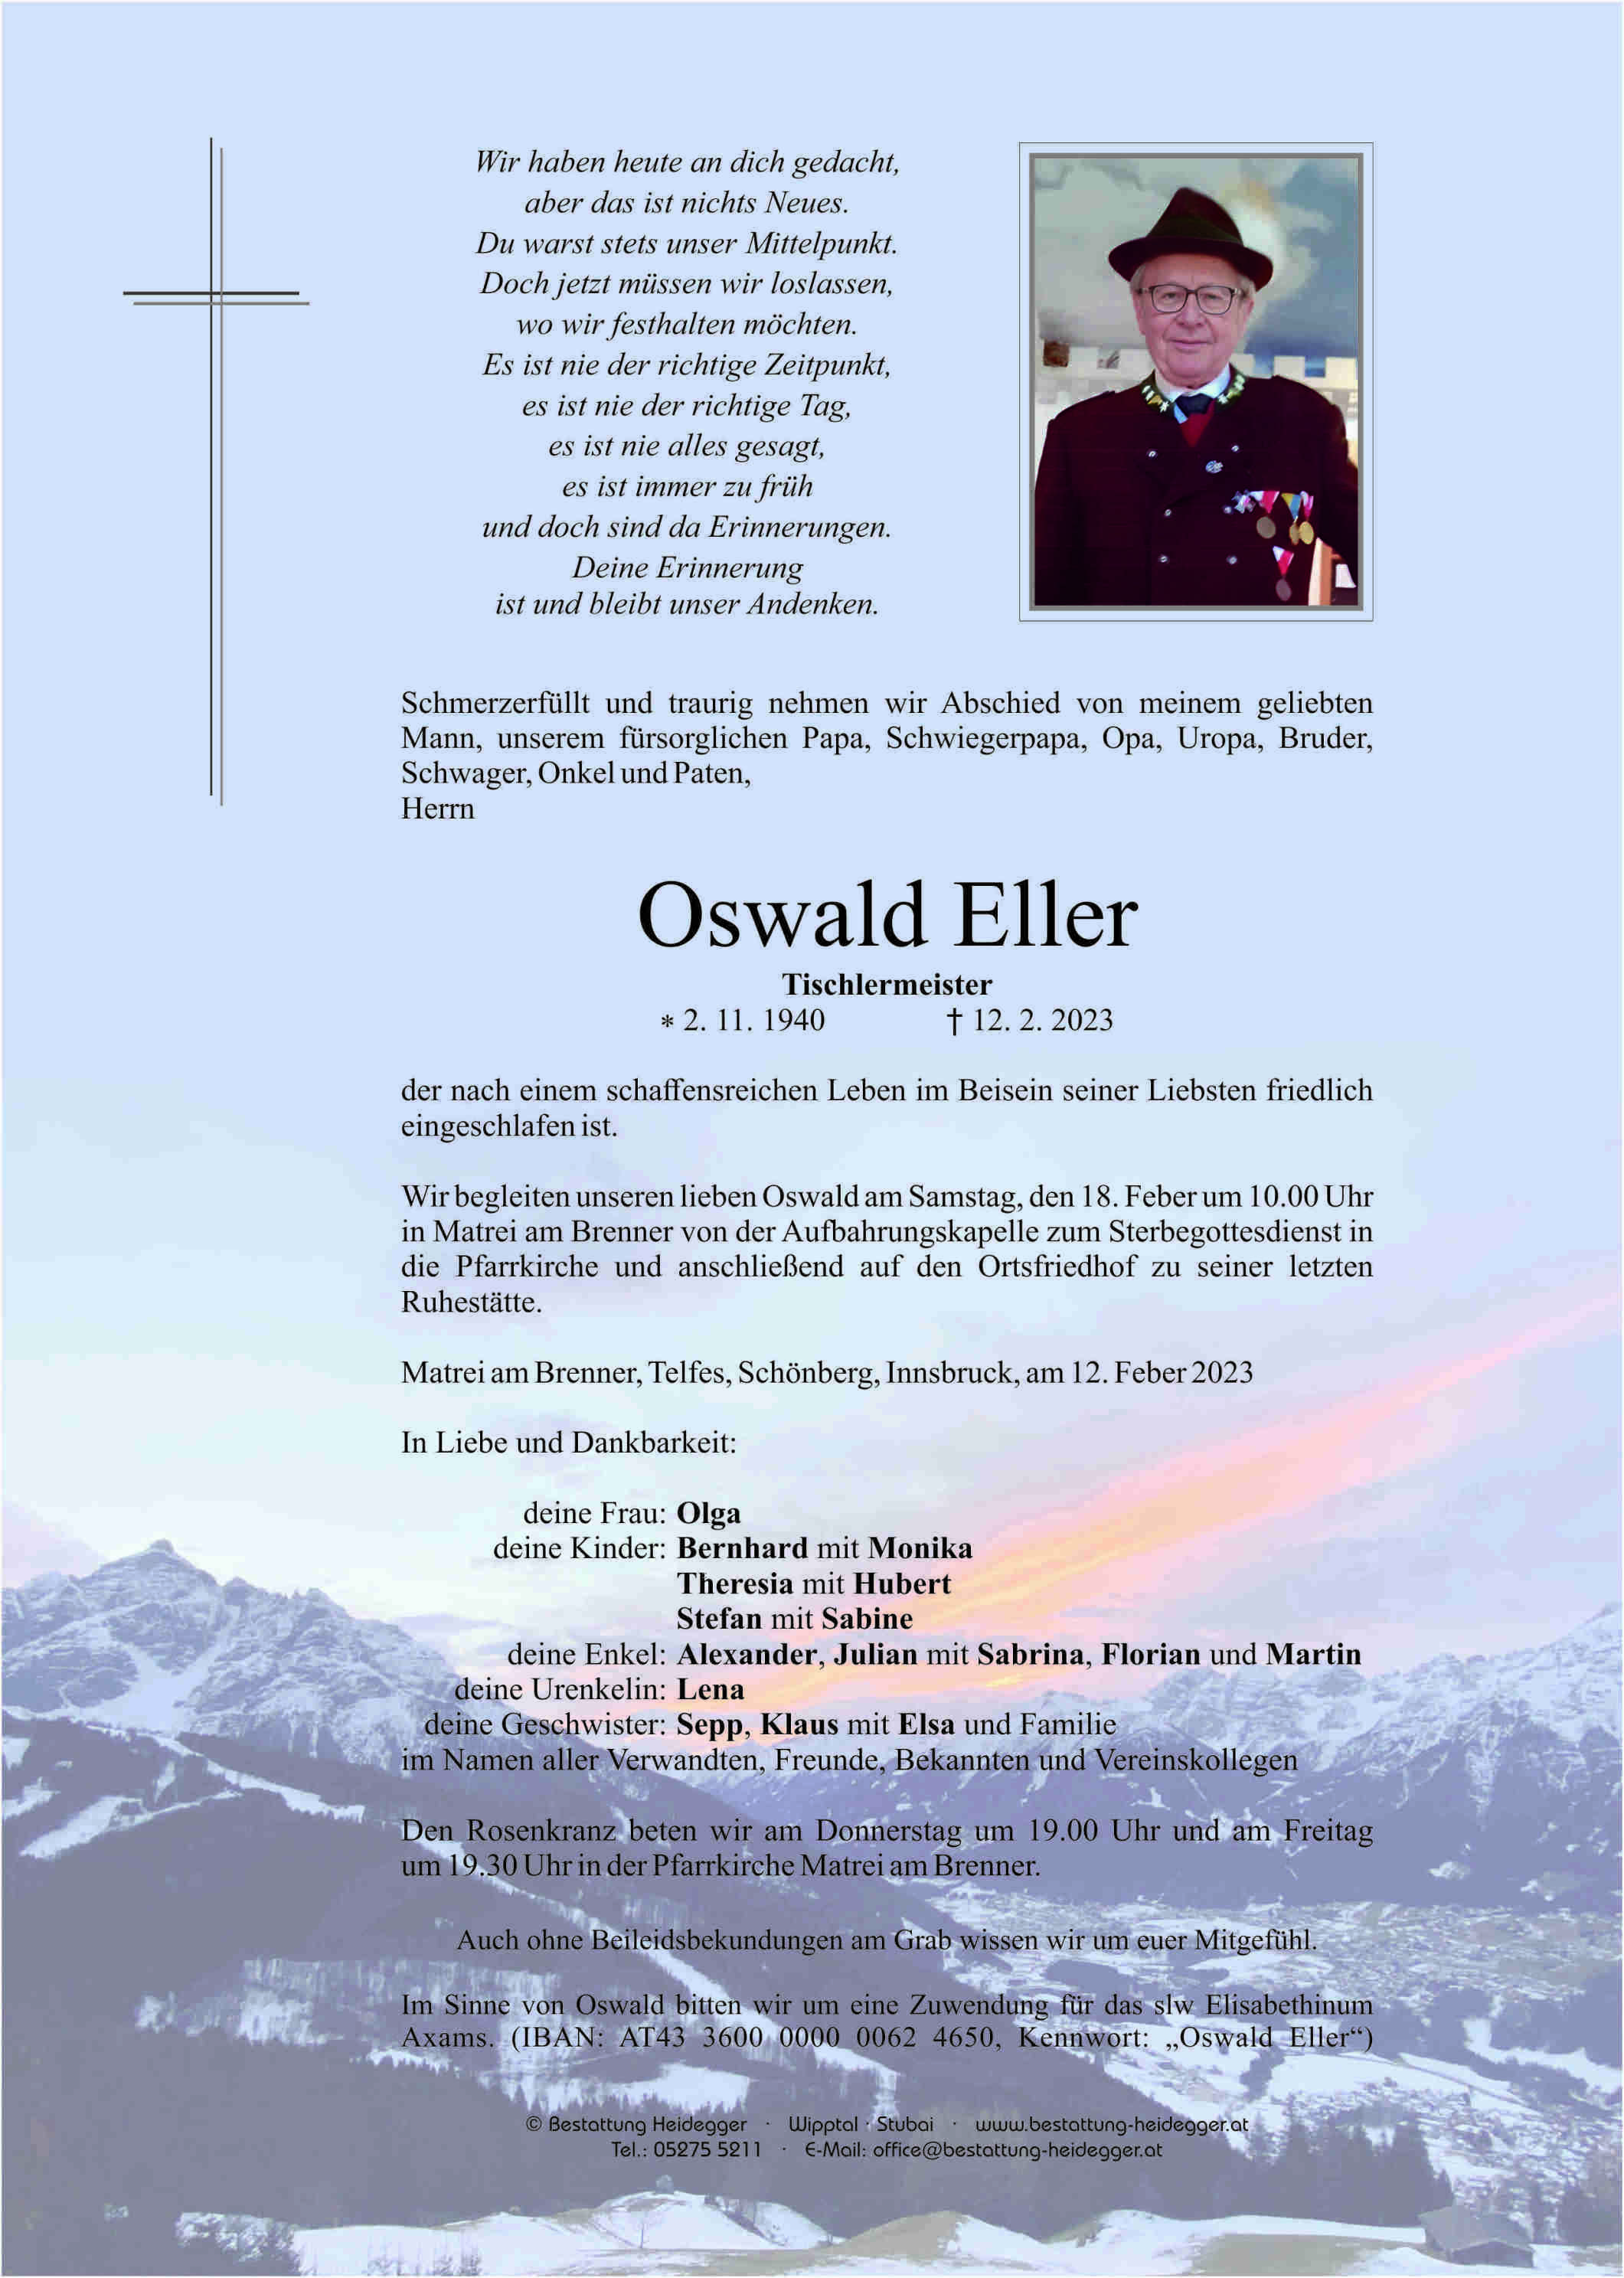 Oswald Eller